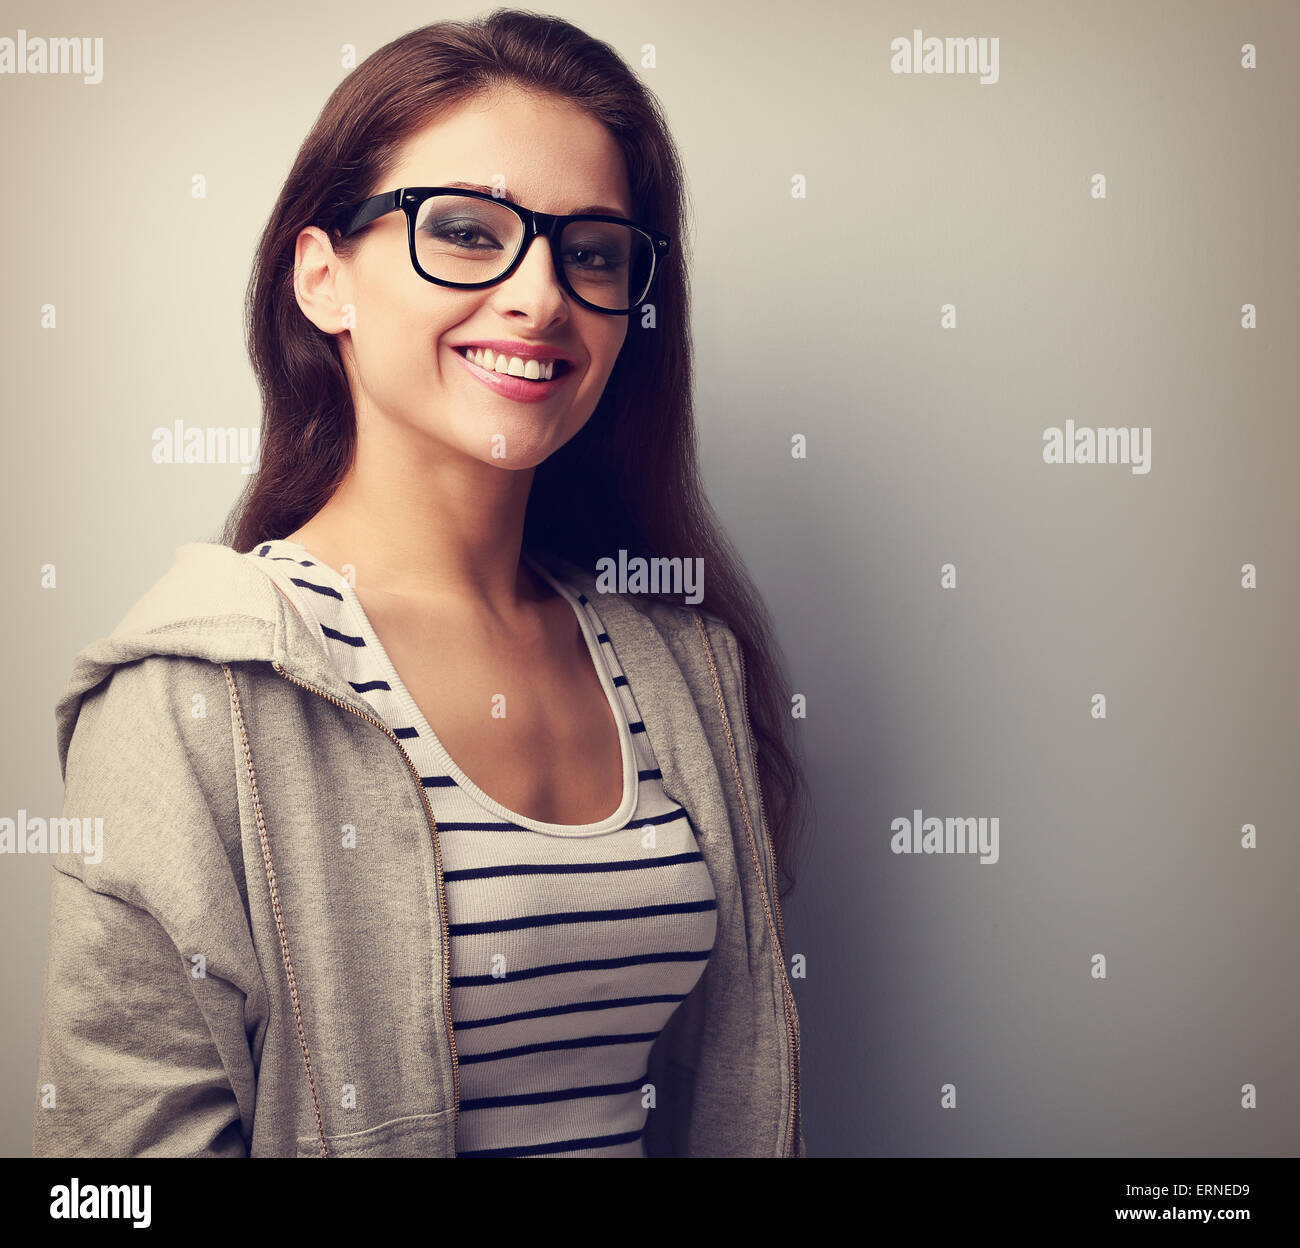 Junge frau mit brille -Fotos und -Bildmaterial in hoher Auflösung – Alamy